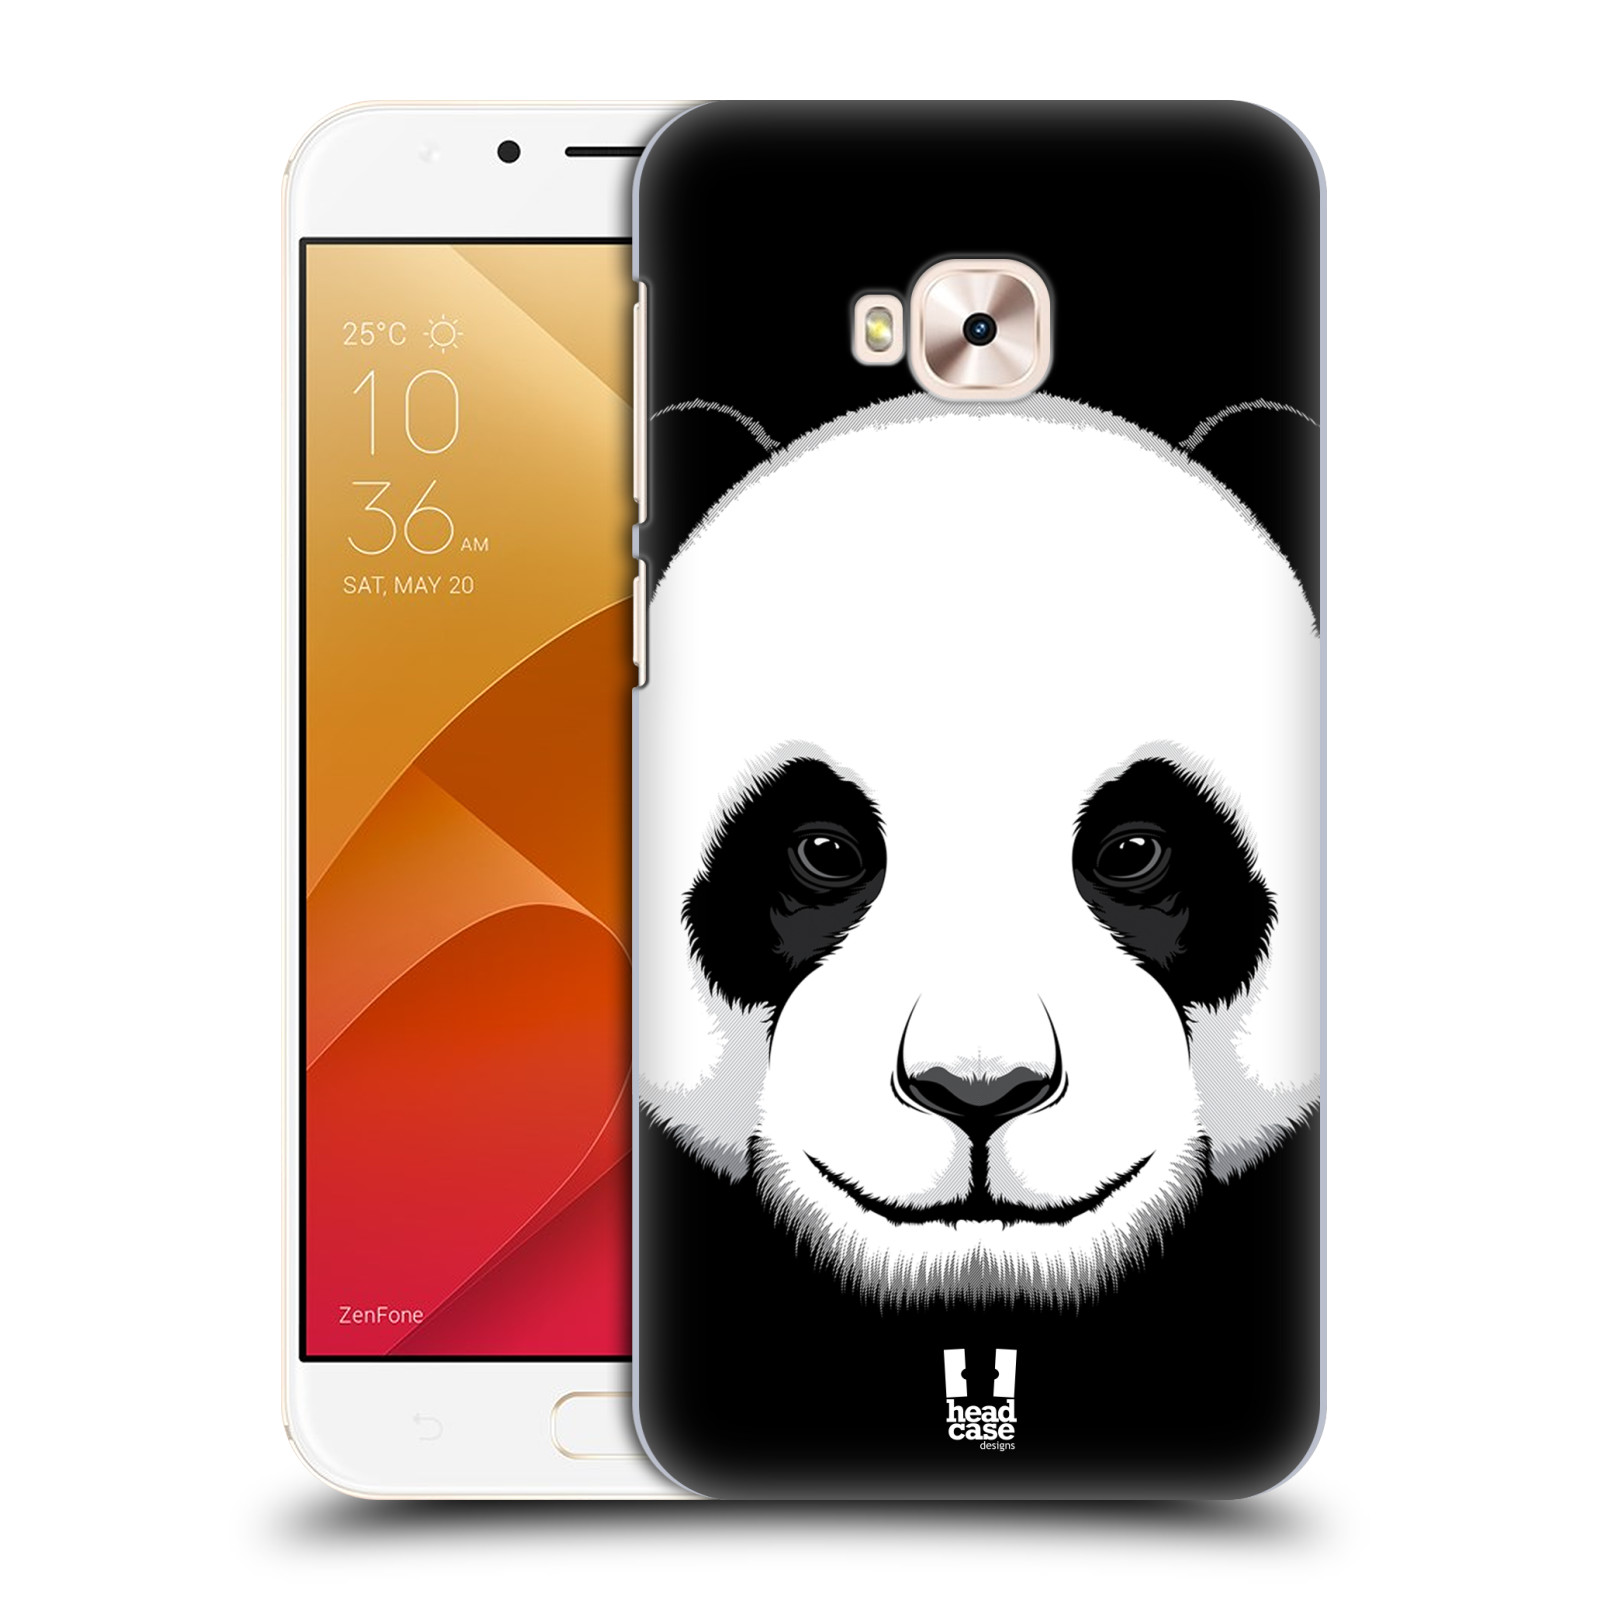 HEAD CASE plastový obal na mobil Asus Zenfone 4 Selfie Pro ZD552KL vzor Zvíře kreslená tvář panda